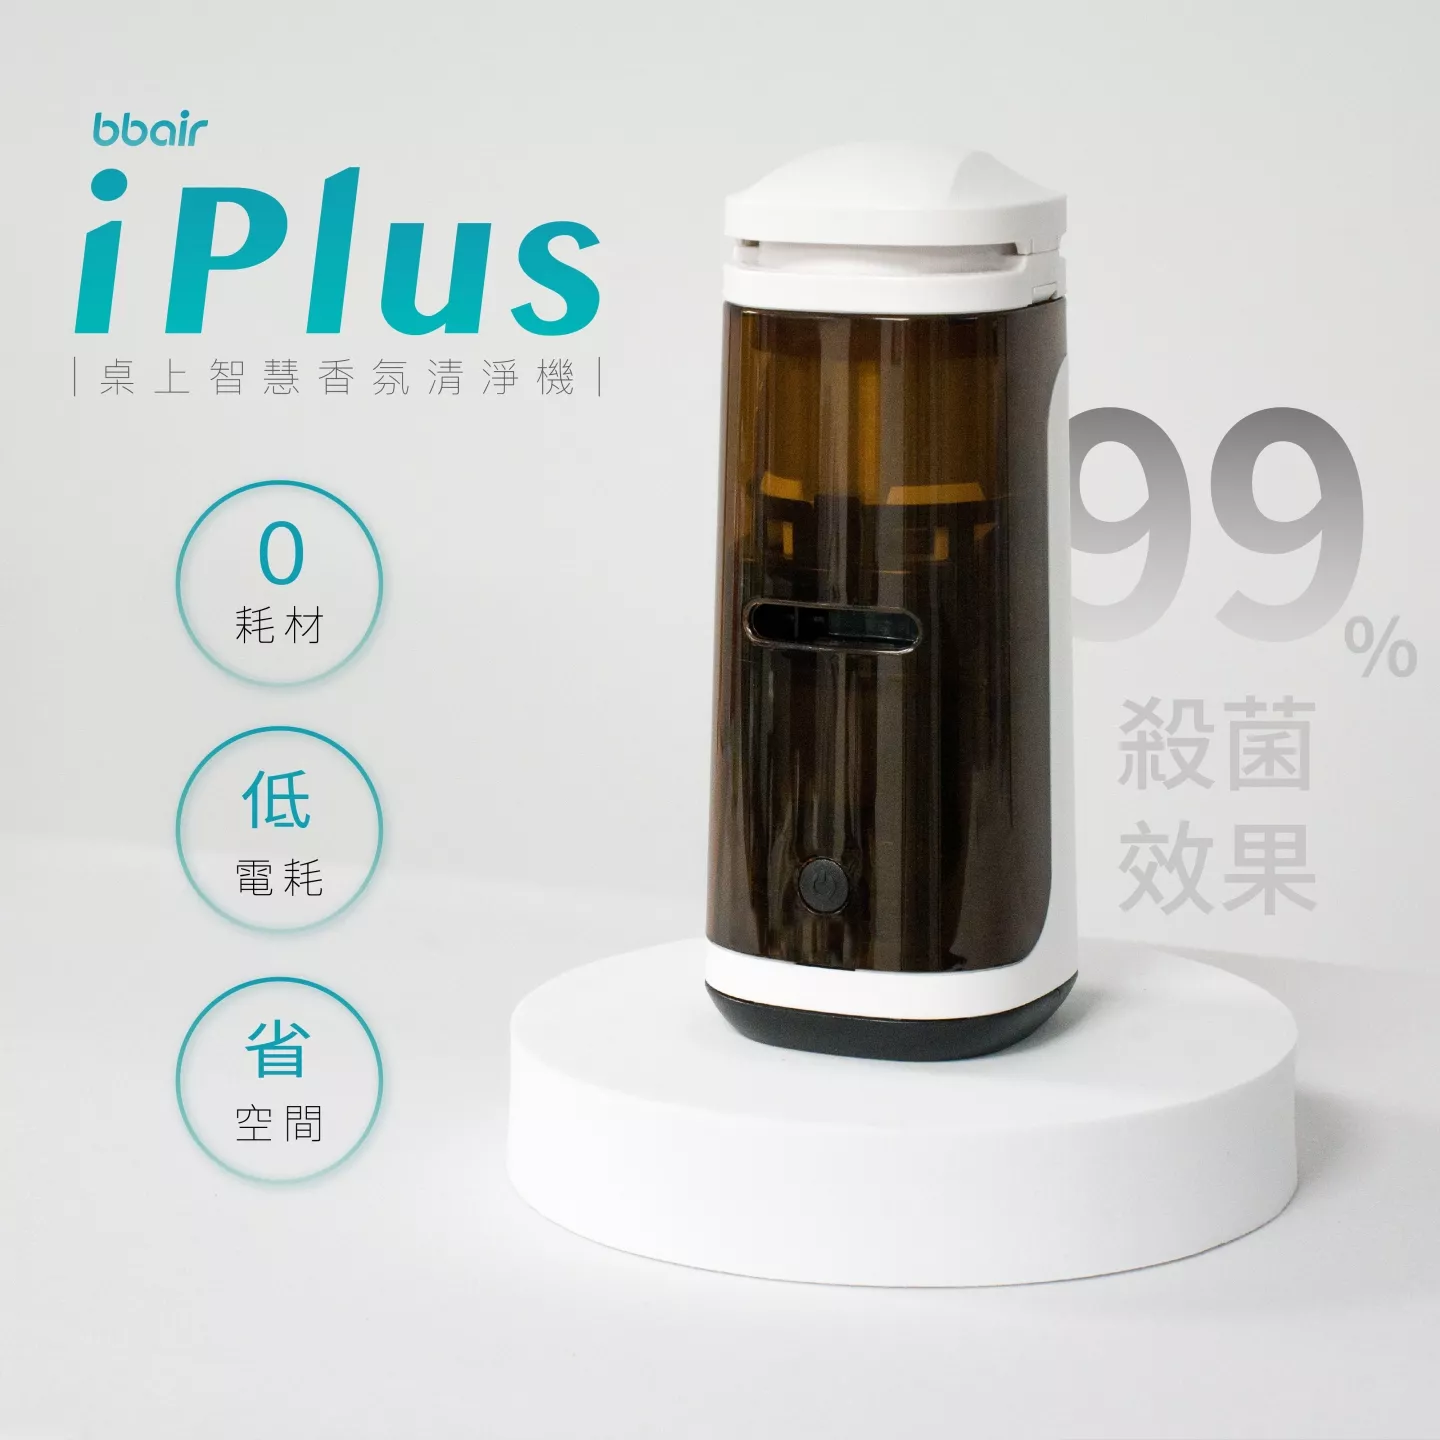 bbair iPlus 桌上智慧香氛清淨機 99%殺菌效果 0耗材 低電耗 省空間